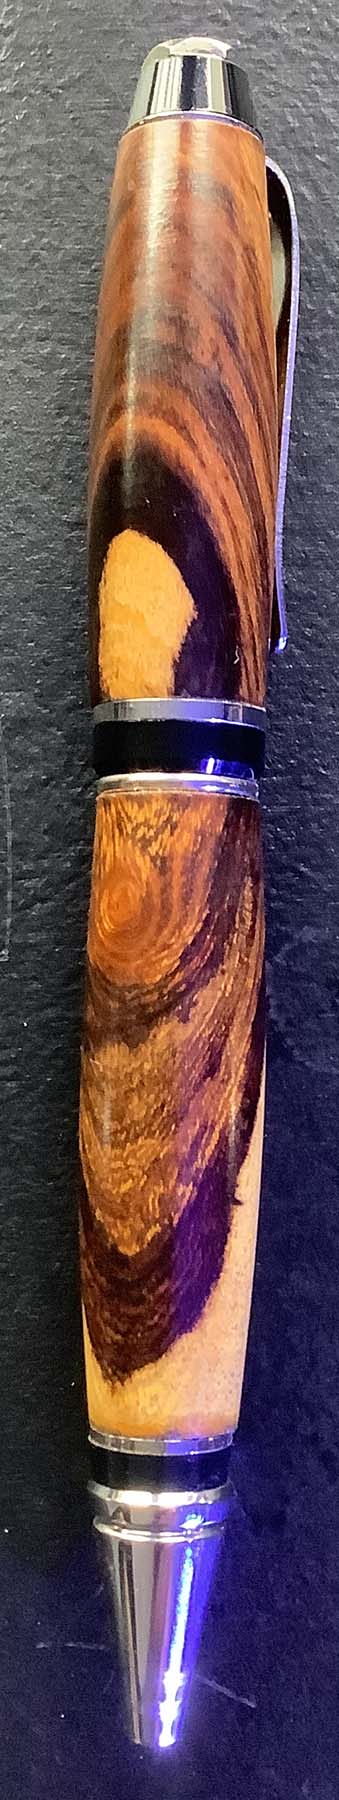 Pen in Desert ironwood